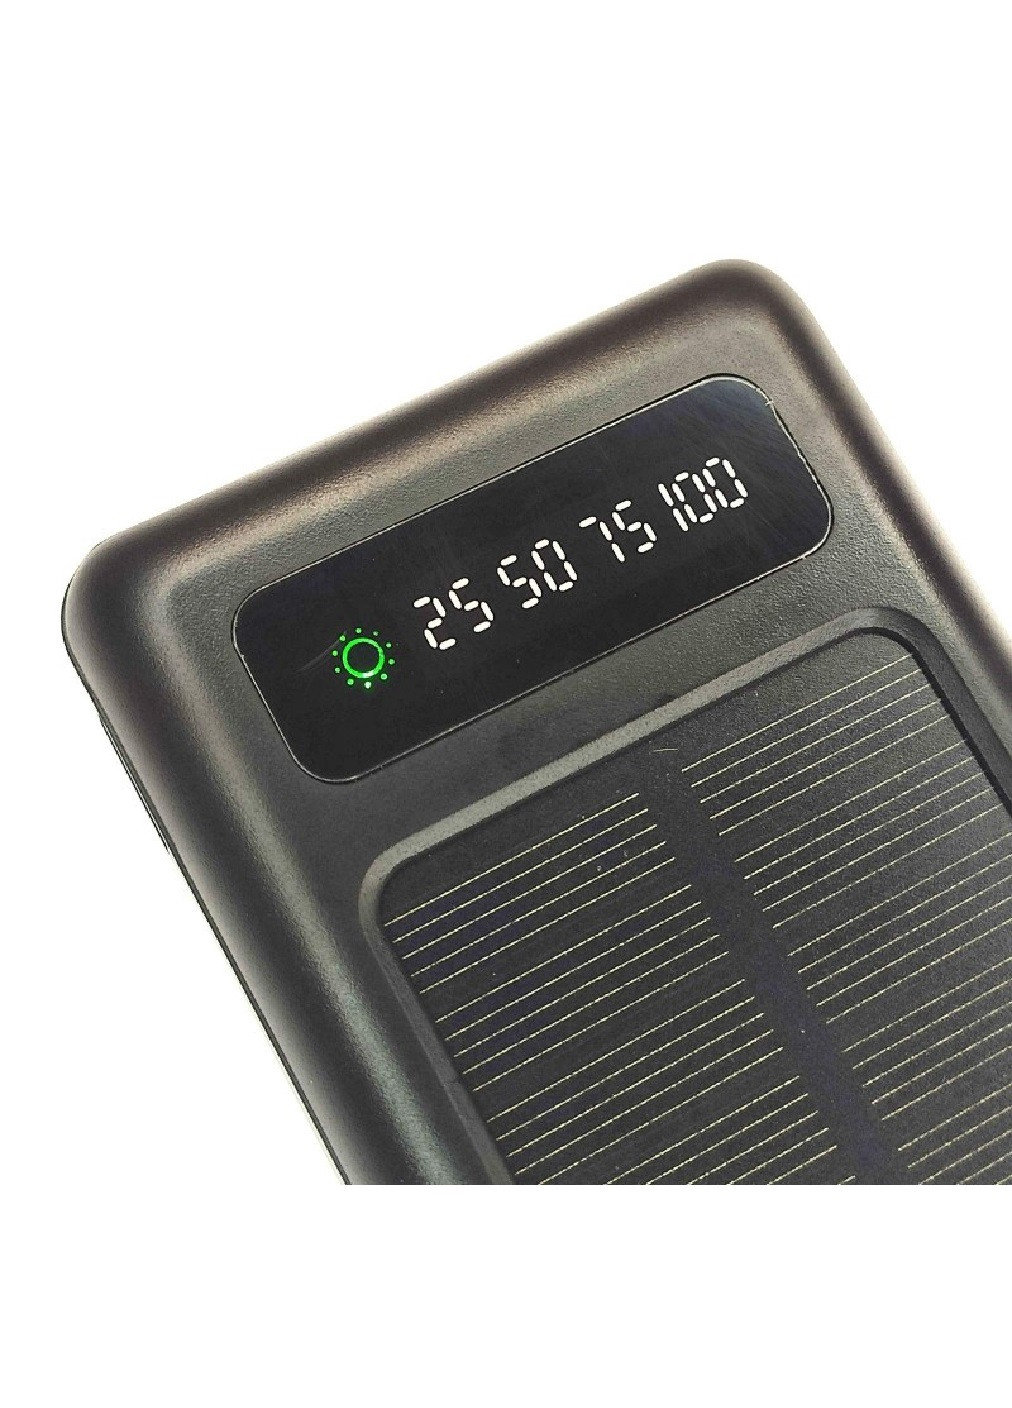 Power Bank универсальное зарядное устройство батарея внешний аккумулятор с солнечной панелью 10000 Mah (475044-Prob) Черный (павербанк) Unbranded